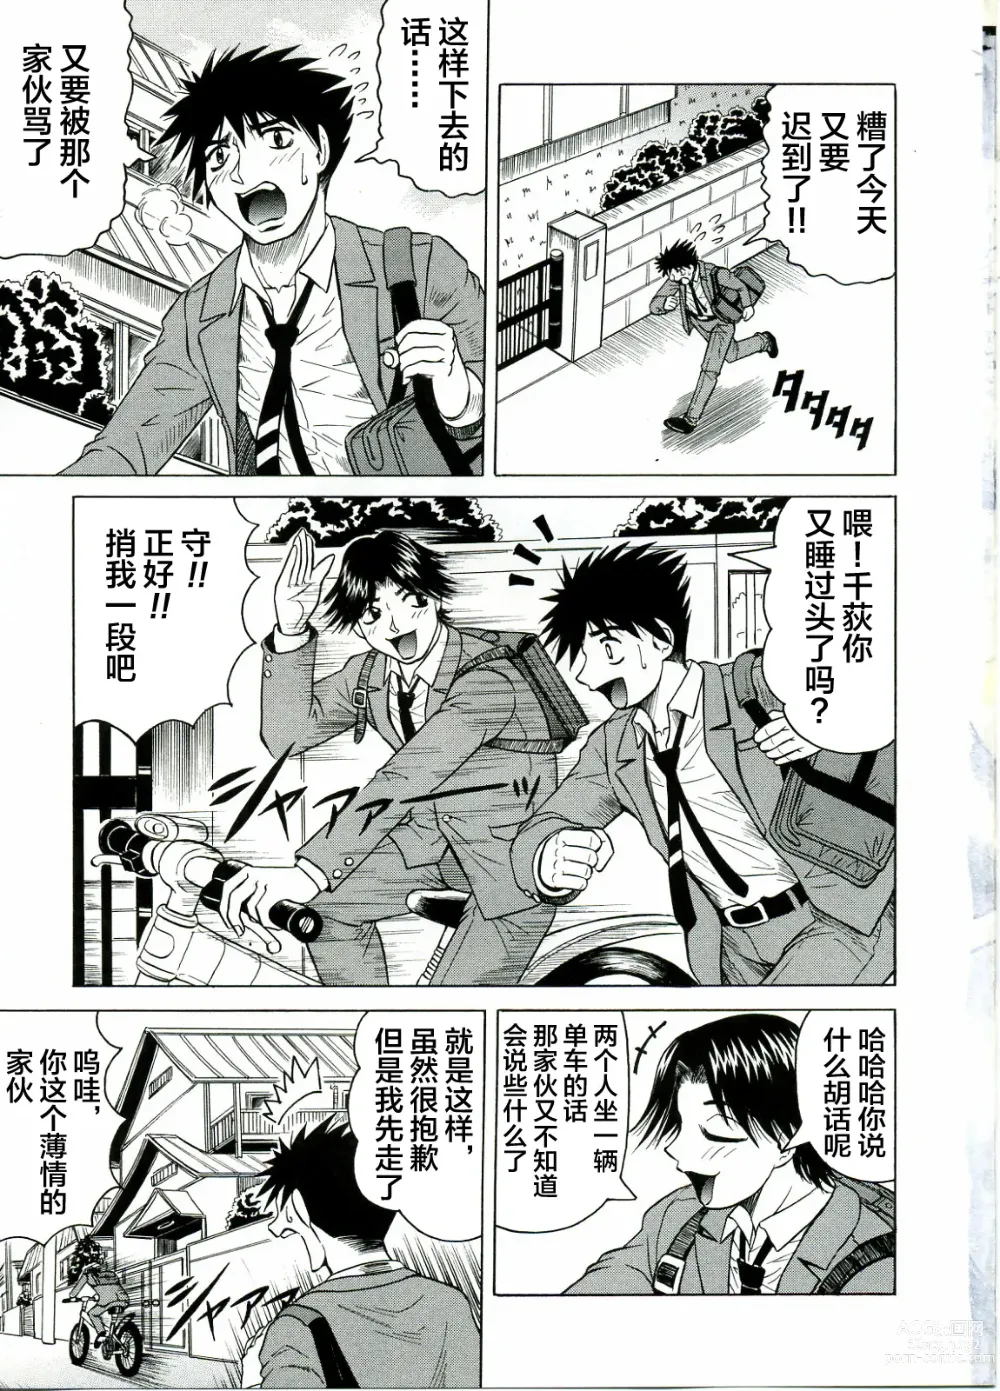 Page 5 of manga Tames